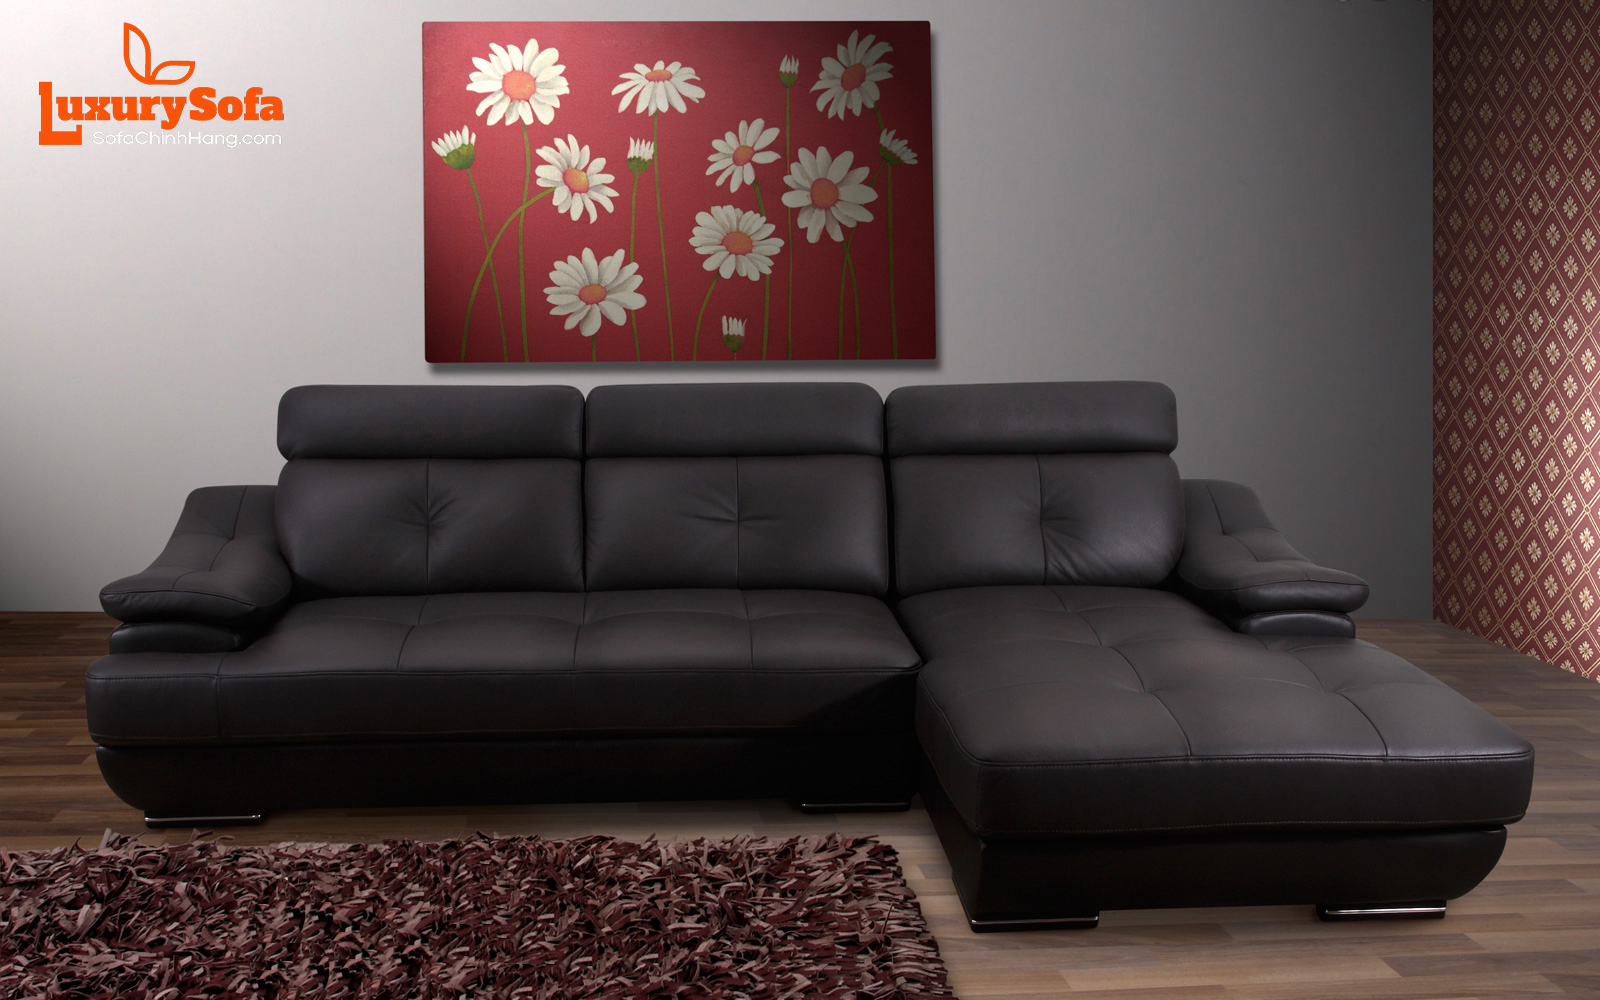 Chọn lựa bàn ghế sofa chung cư để phù hợp với từng thiết kế